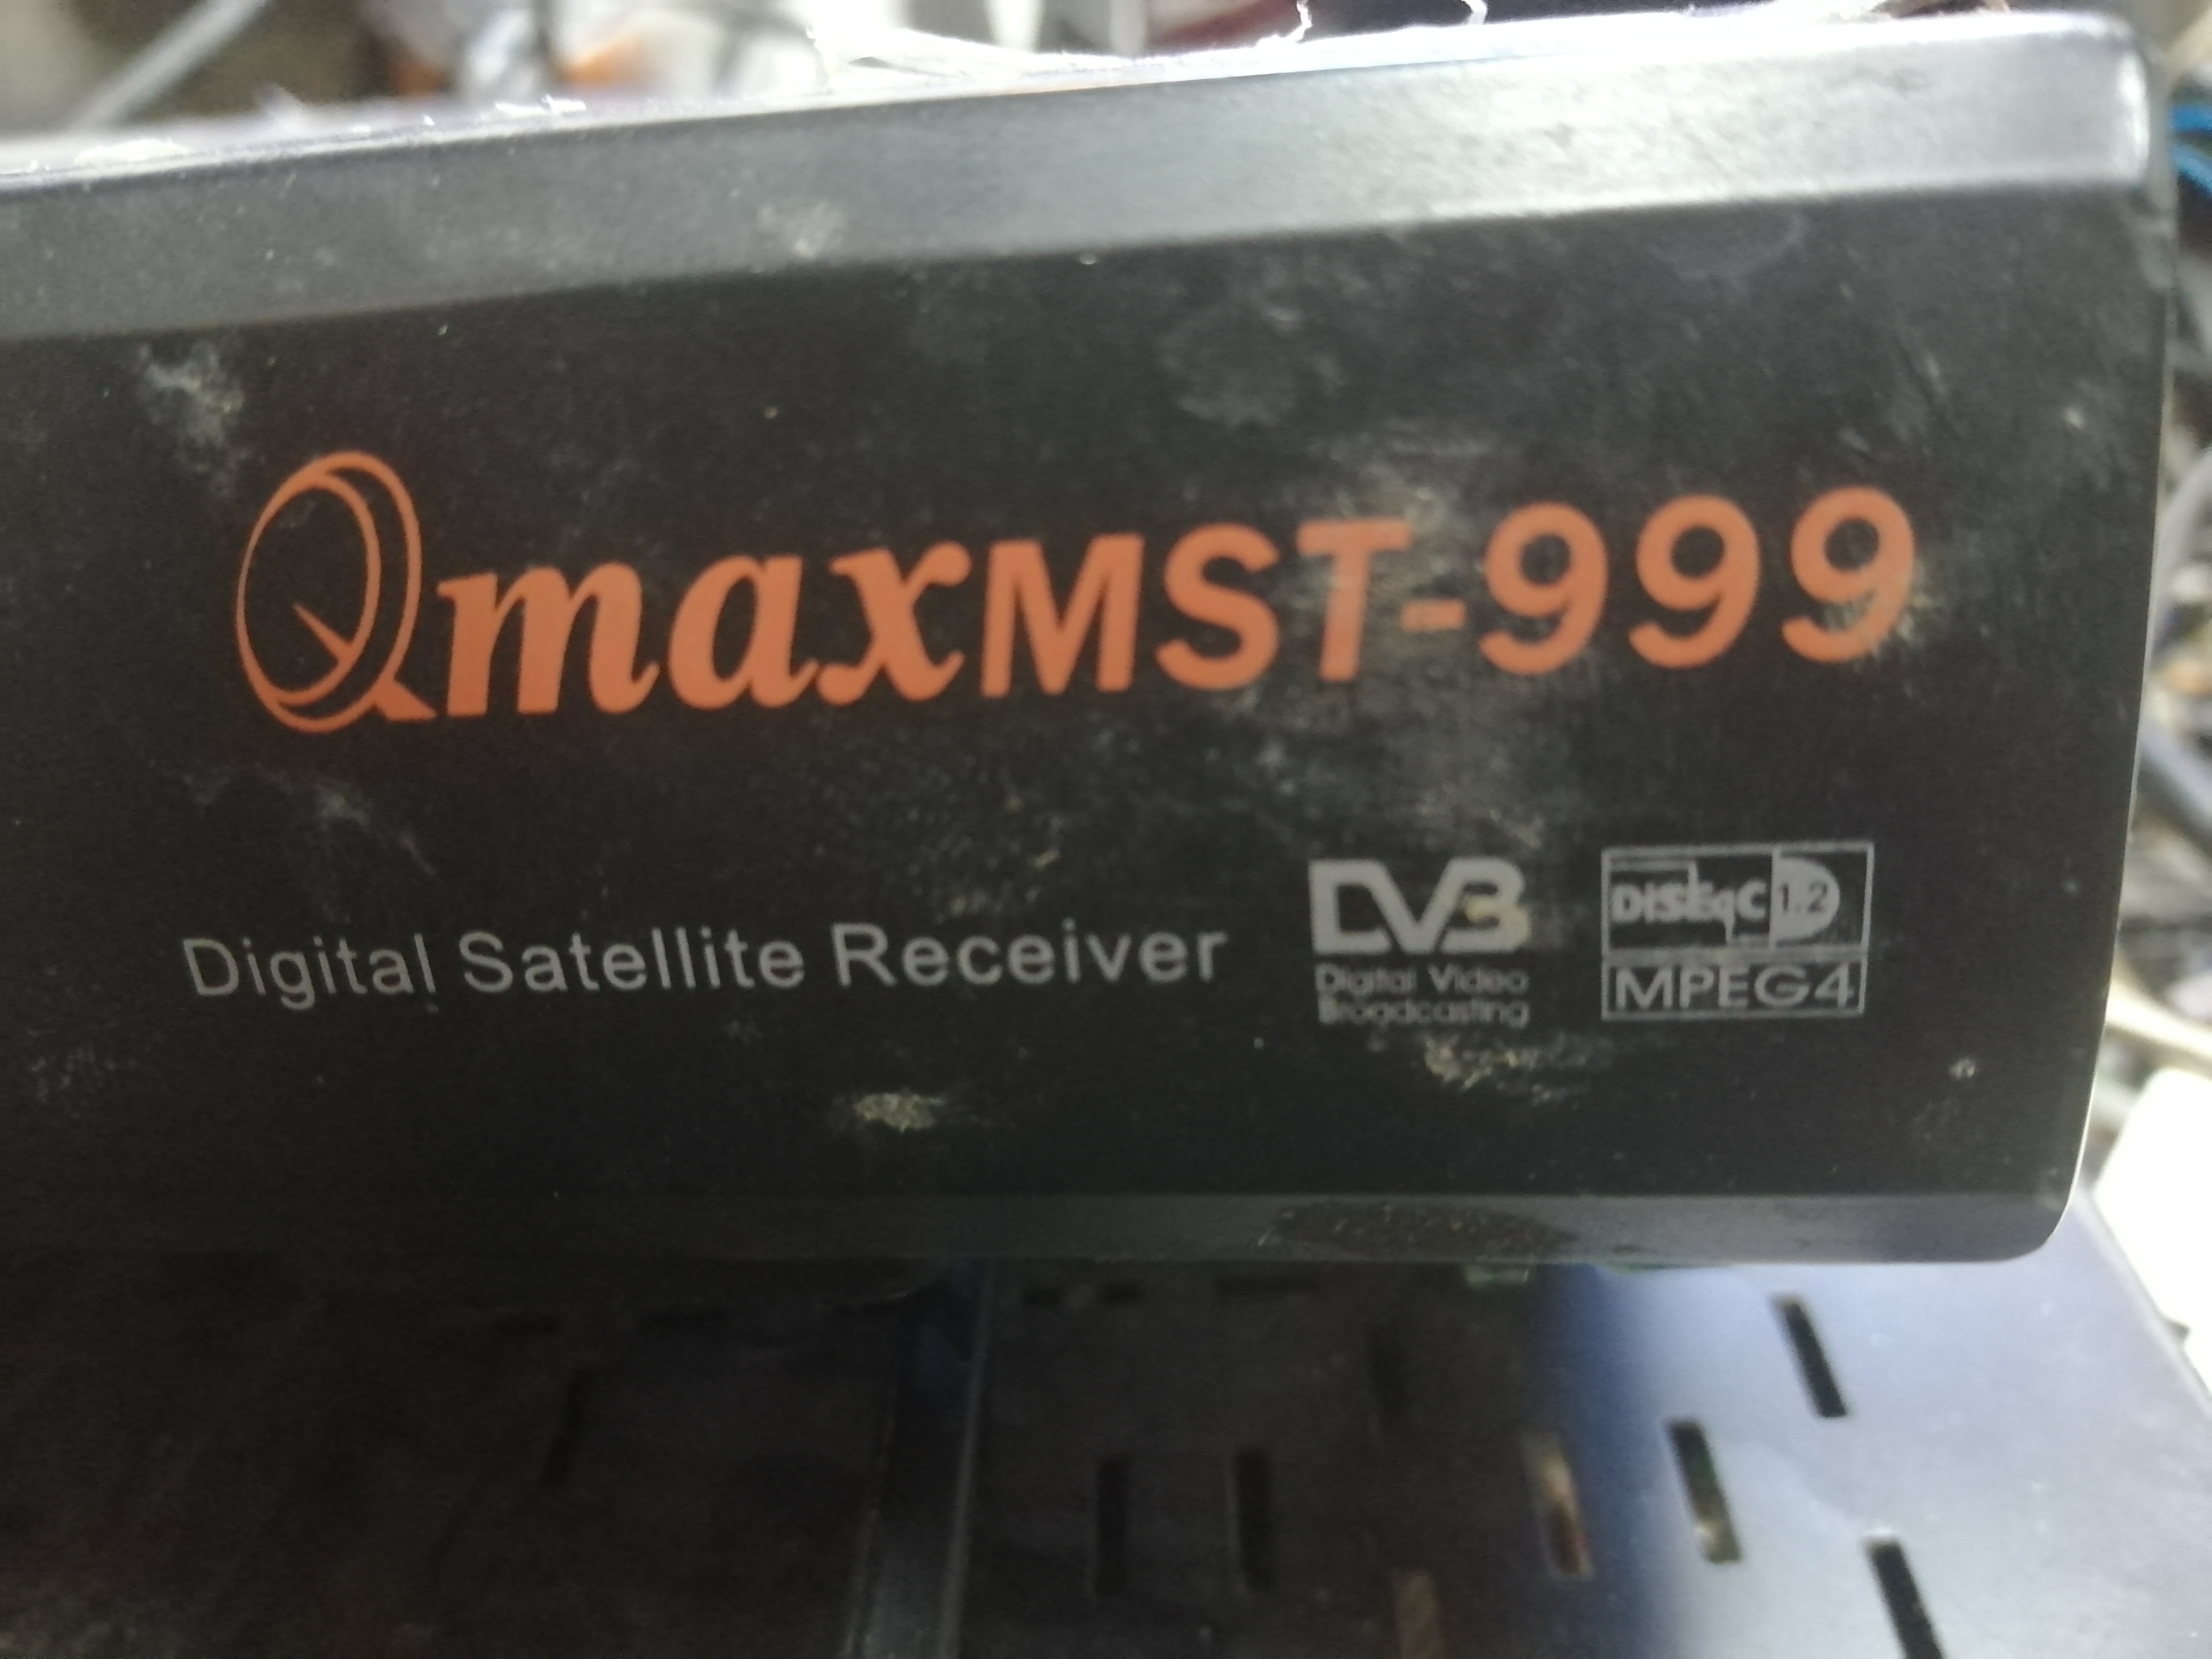 qmax mst-999_H2_MINI_4(new)_V2.05 3.jpg